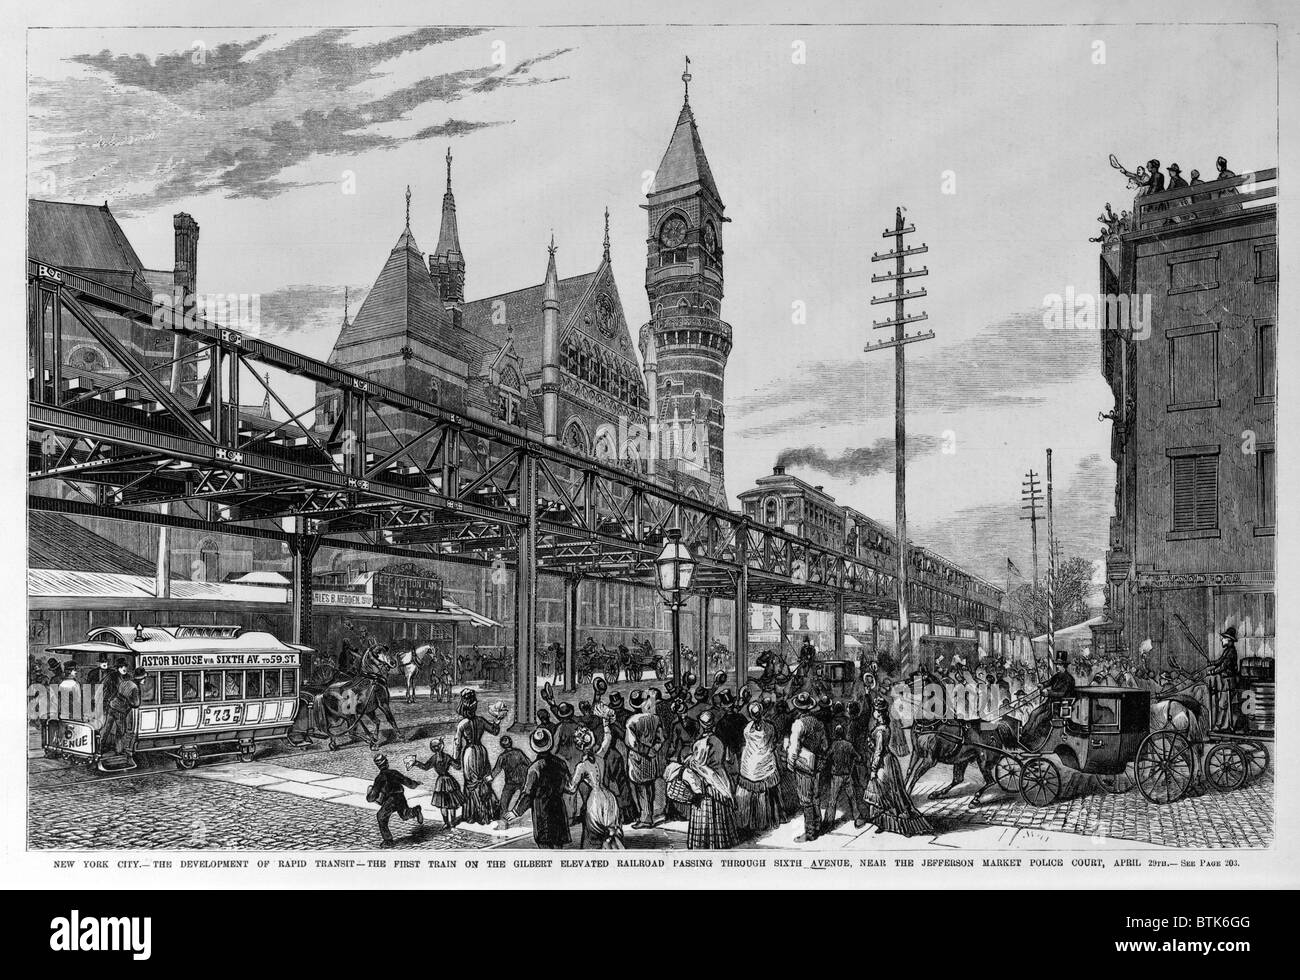 New York City. der erste Zug auf der Gilbert erhöhte Eisenbahn Sixth Avenue, in der Nähe von Jefferson Market Police Court auf der Durchreise. Holzschnitt, 29. April 1878 Stockfoto